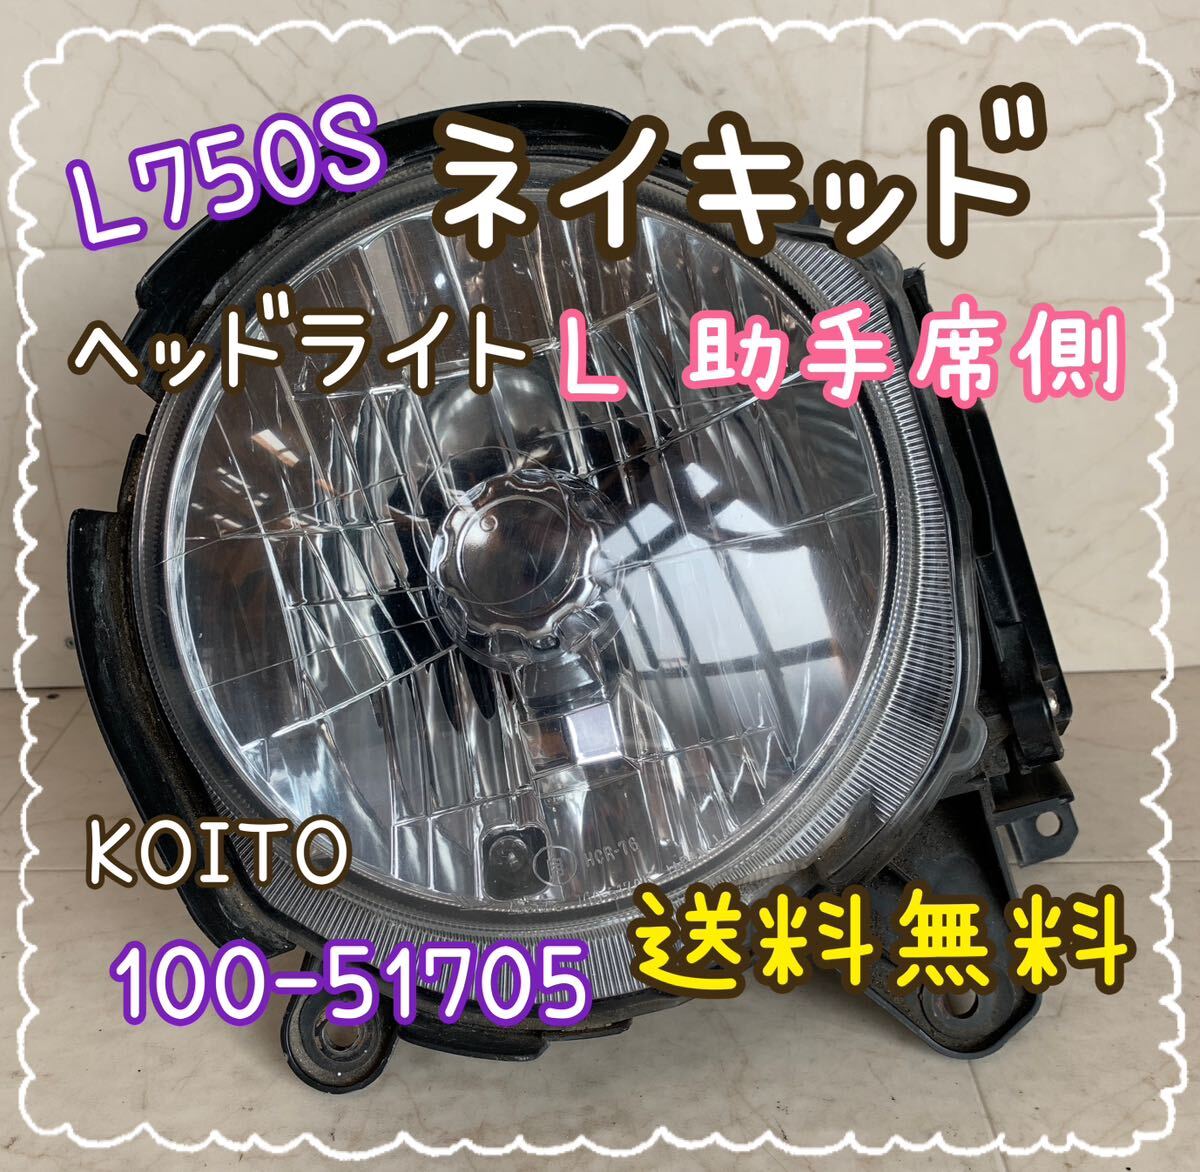 送料無料 L750 ネイキッド L 助手席側 ヘッドライト HID KOITO 100-51705 HCR-76 ダイハツ ＤＡＩＨＡＴＳＵの画像1